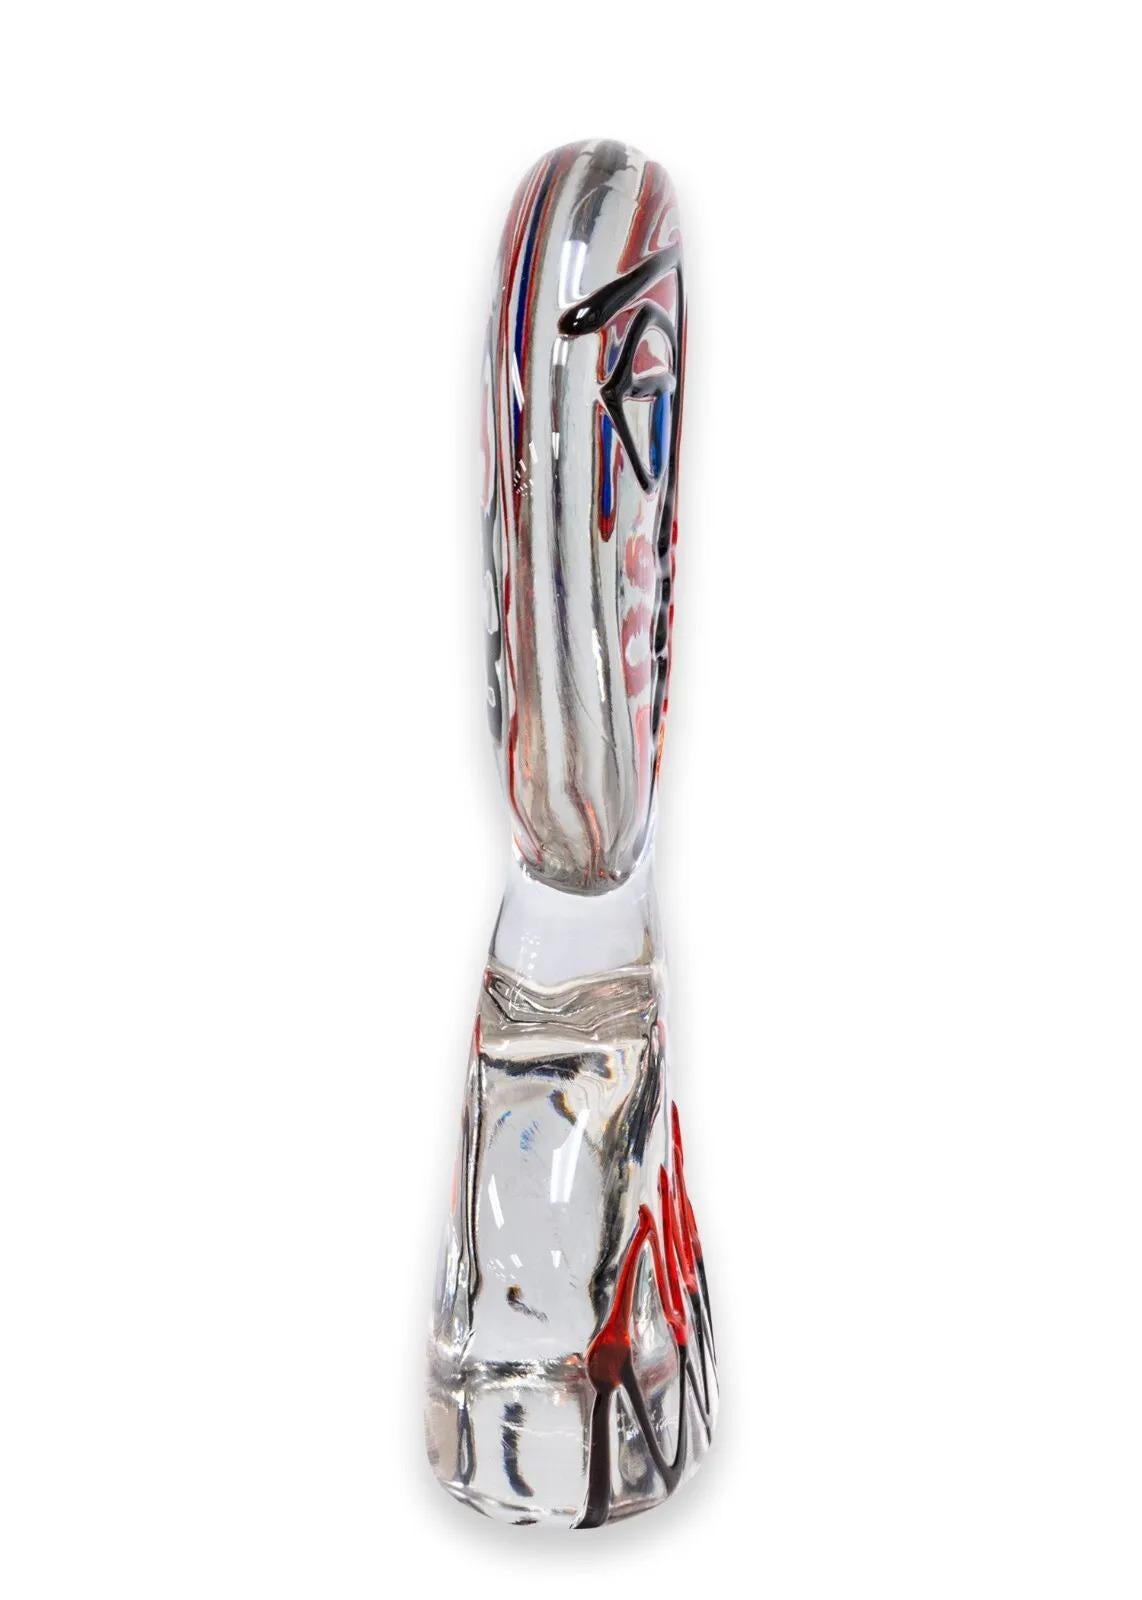 Une sculpture italienne ludique en verre de Murano représentant un visage moderne cubiste par Ermanno Nason. Signé en bas. Vers 1970. Ermanno  Nason (1928-2013) a travaillé avec tous les plus grands artistes contemporains, de Marc Chagall à Oscar